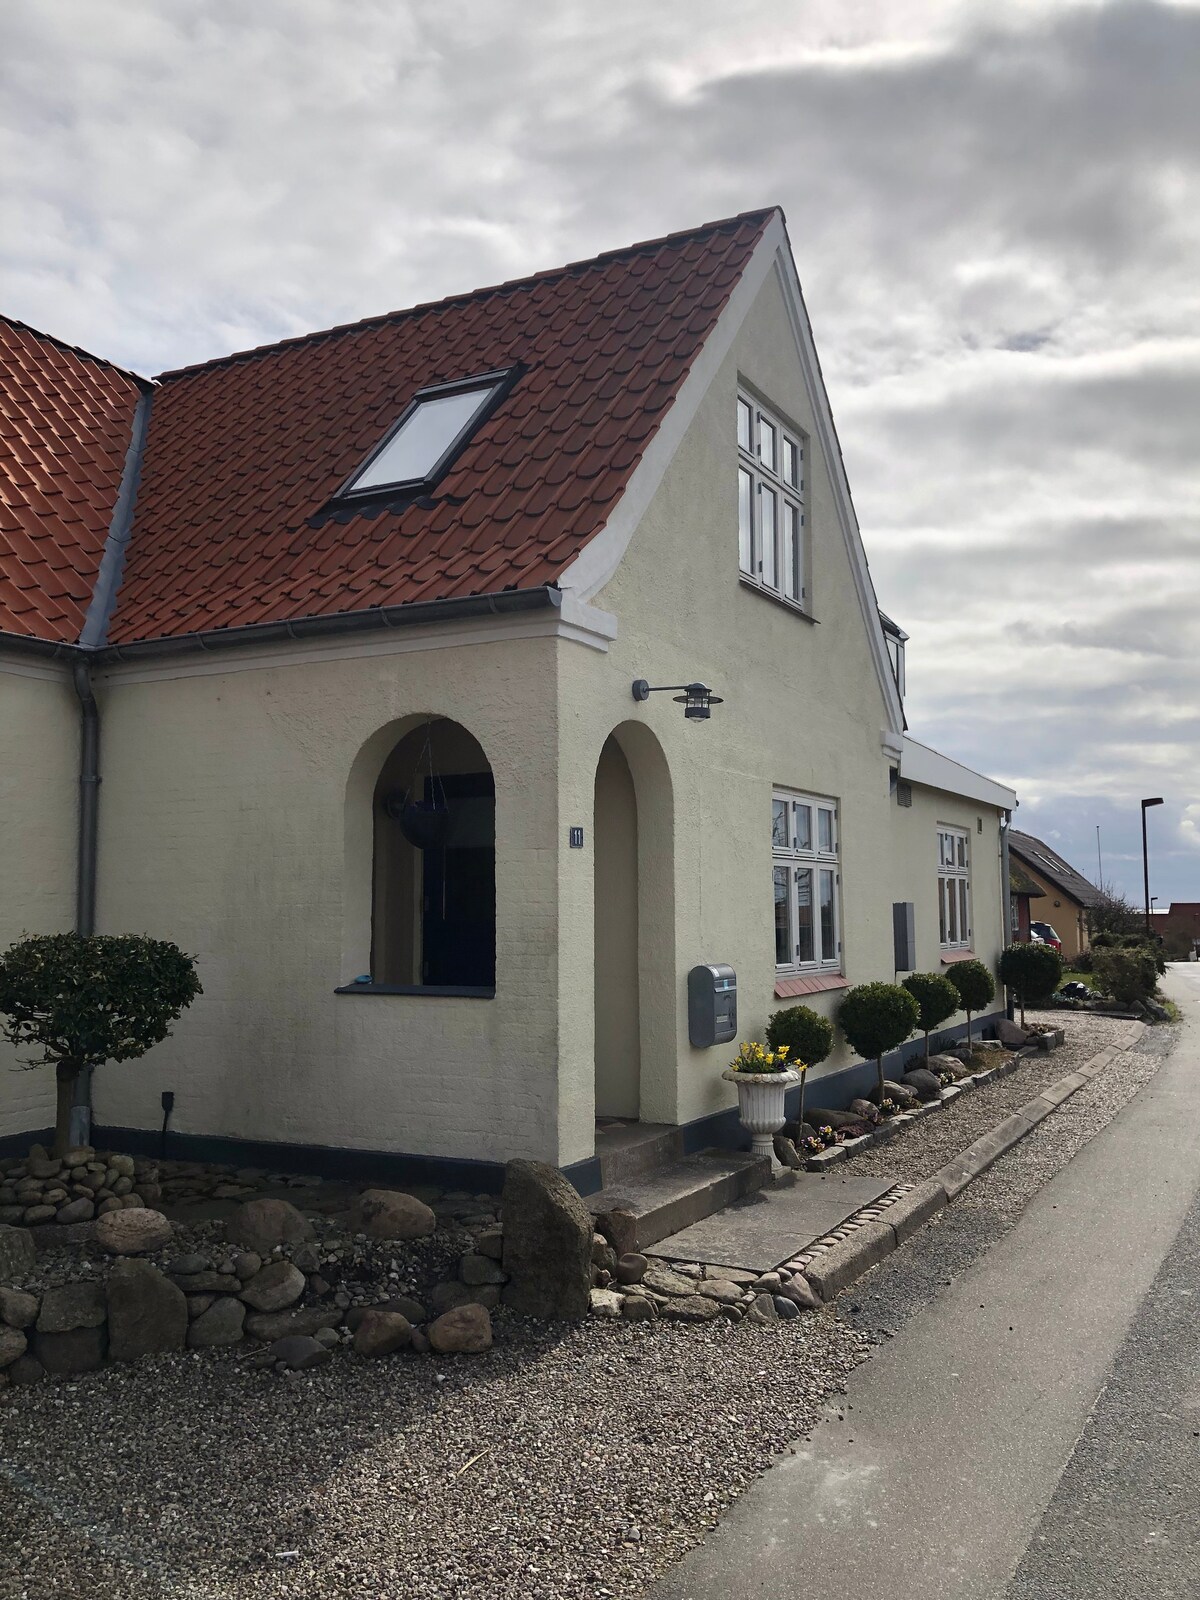 Værelse i skønne Thorøhuse ved Assens, Fyn.